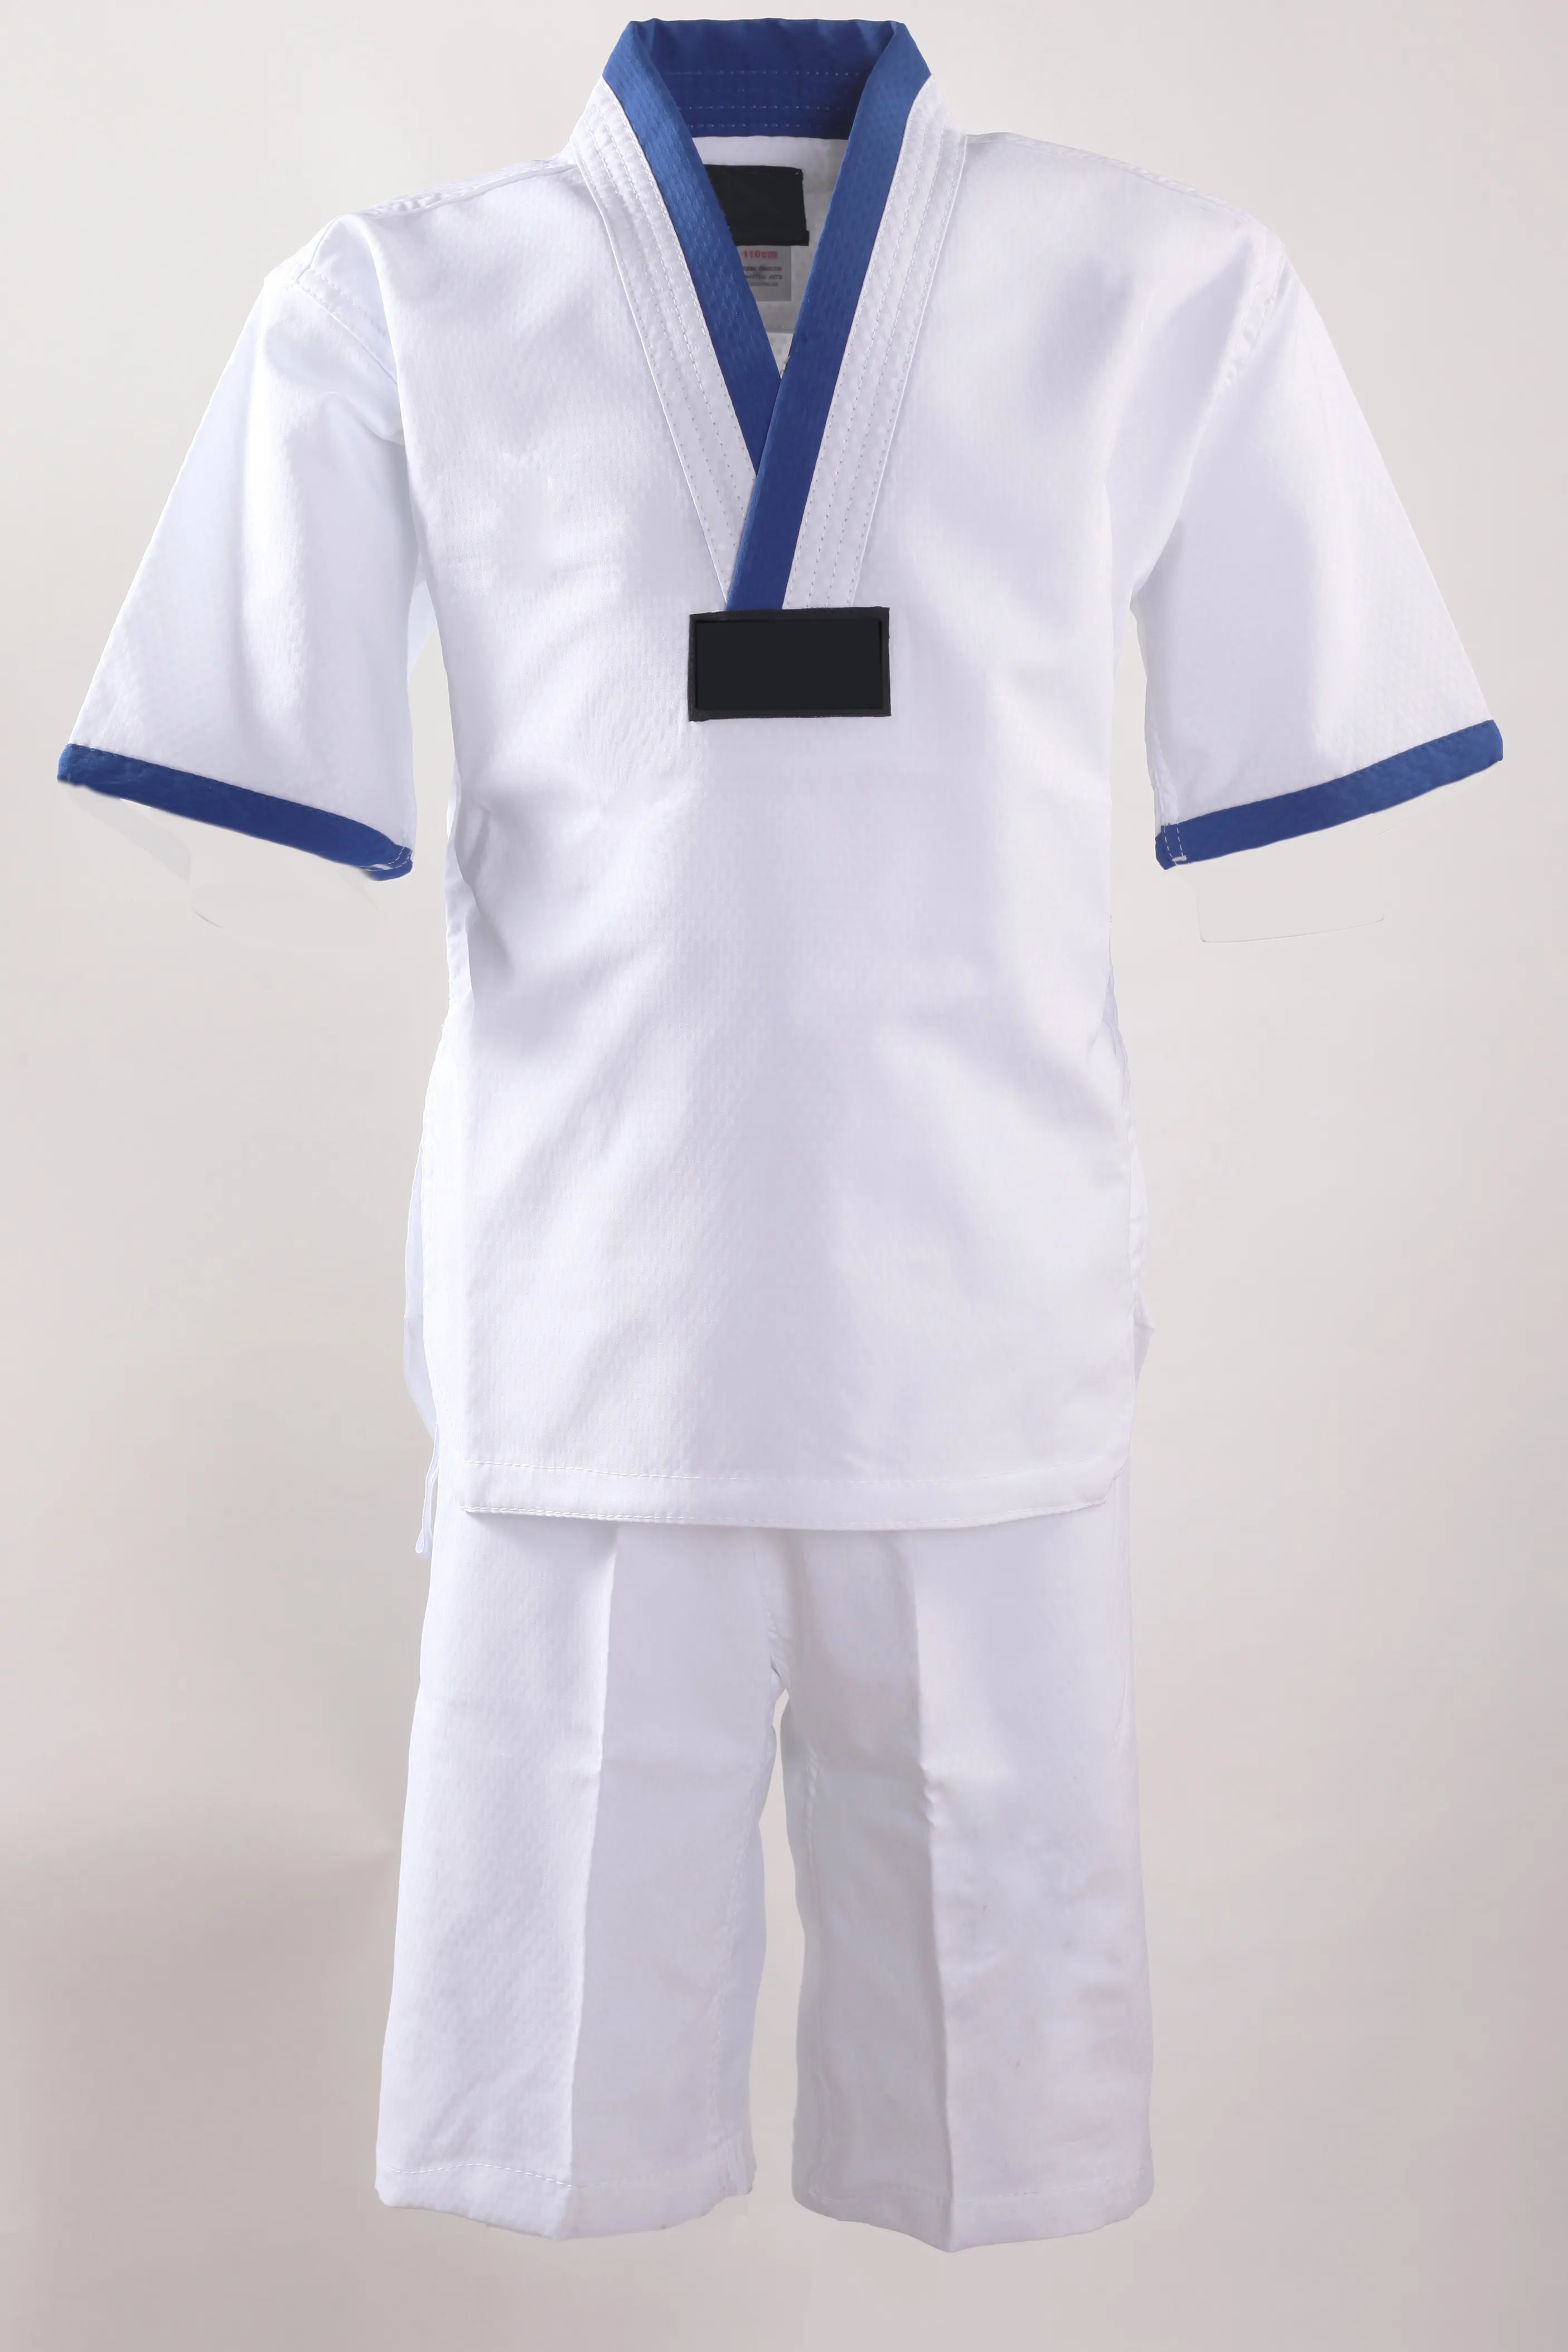 Uniforme de dobok y taekwondo de algodón, con logotipo personalizado bordado, WTF ITF, venta al por mayor